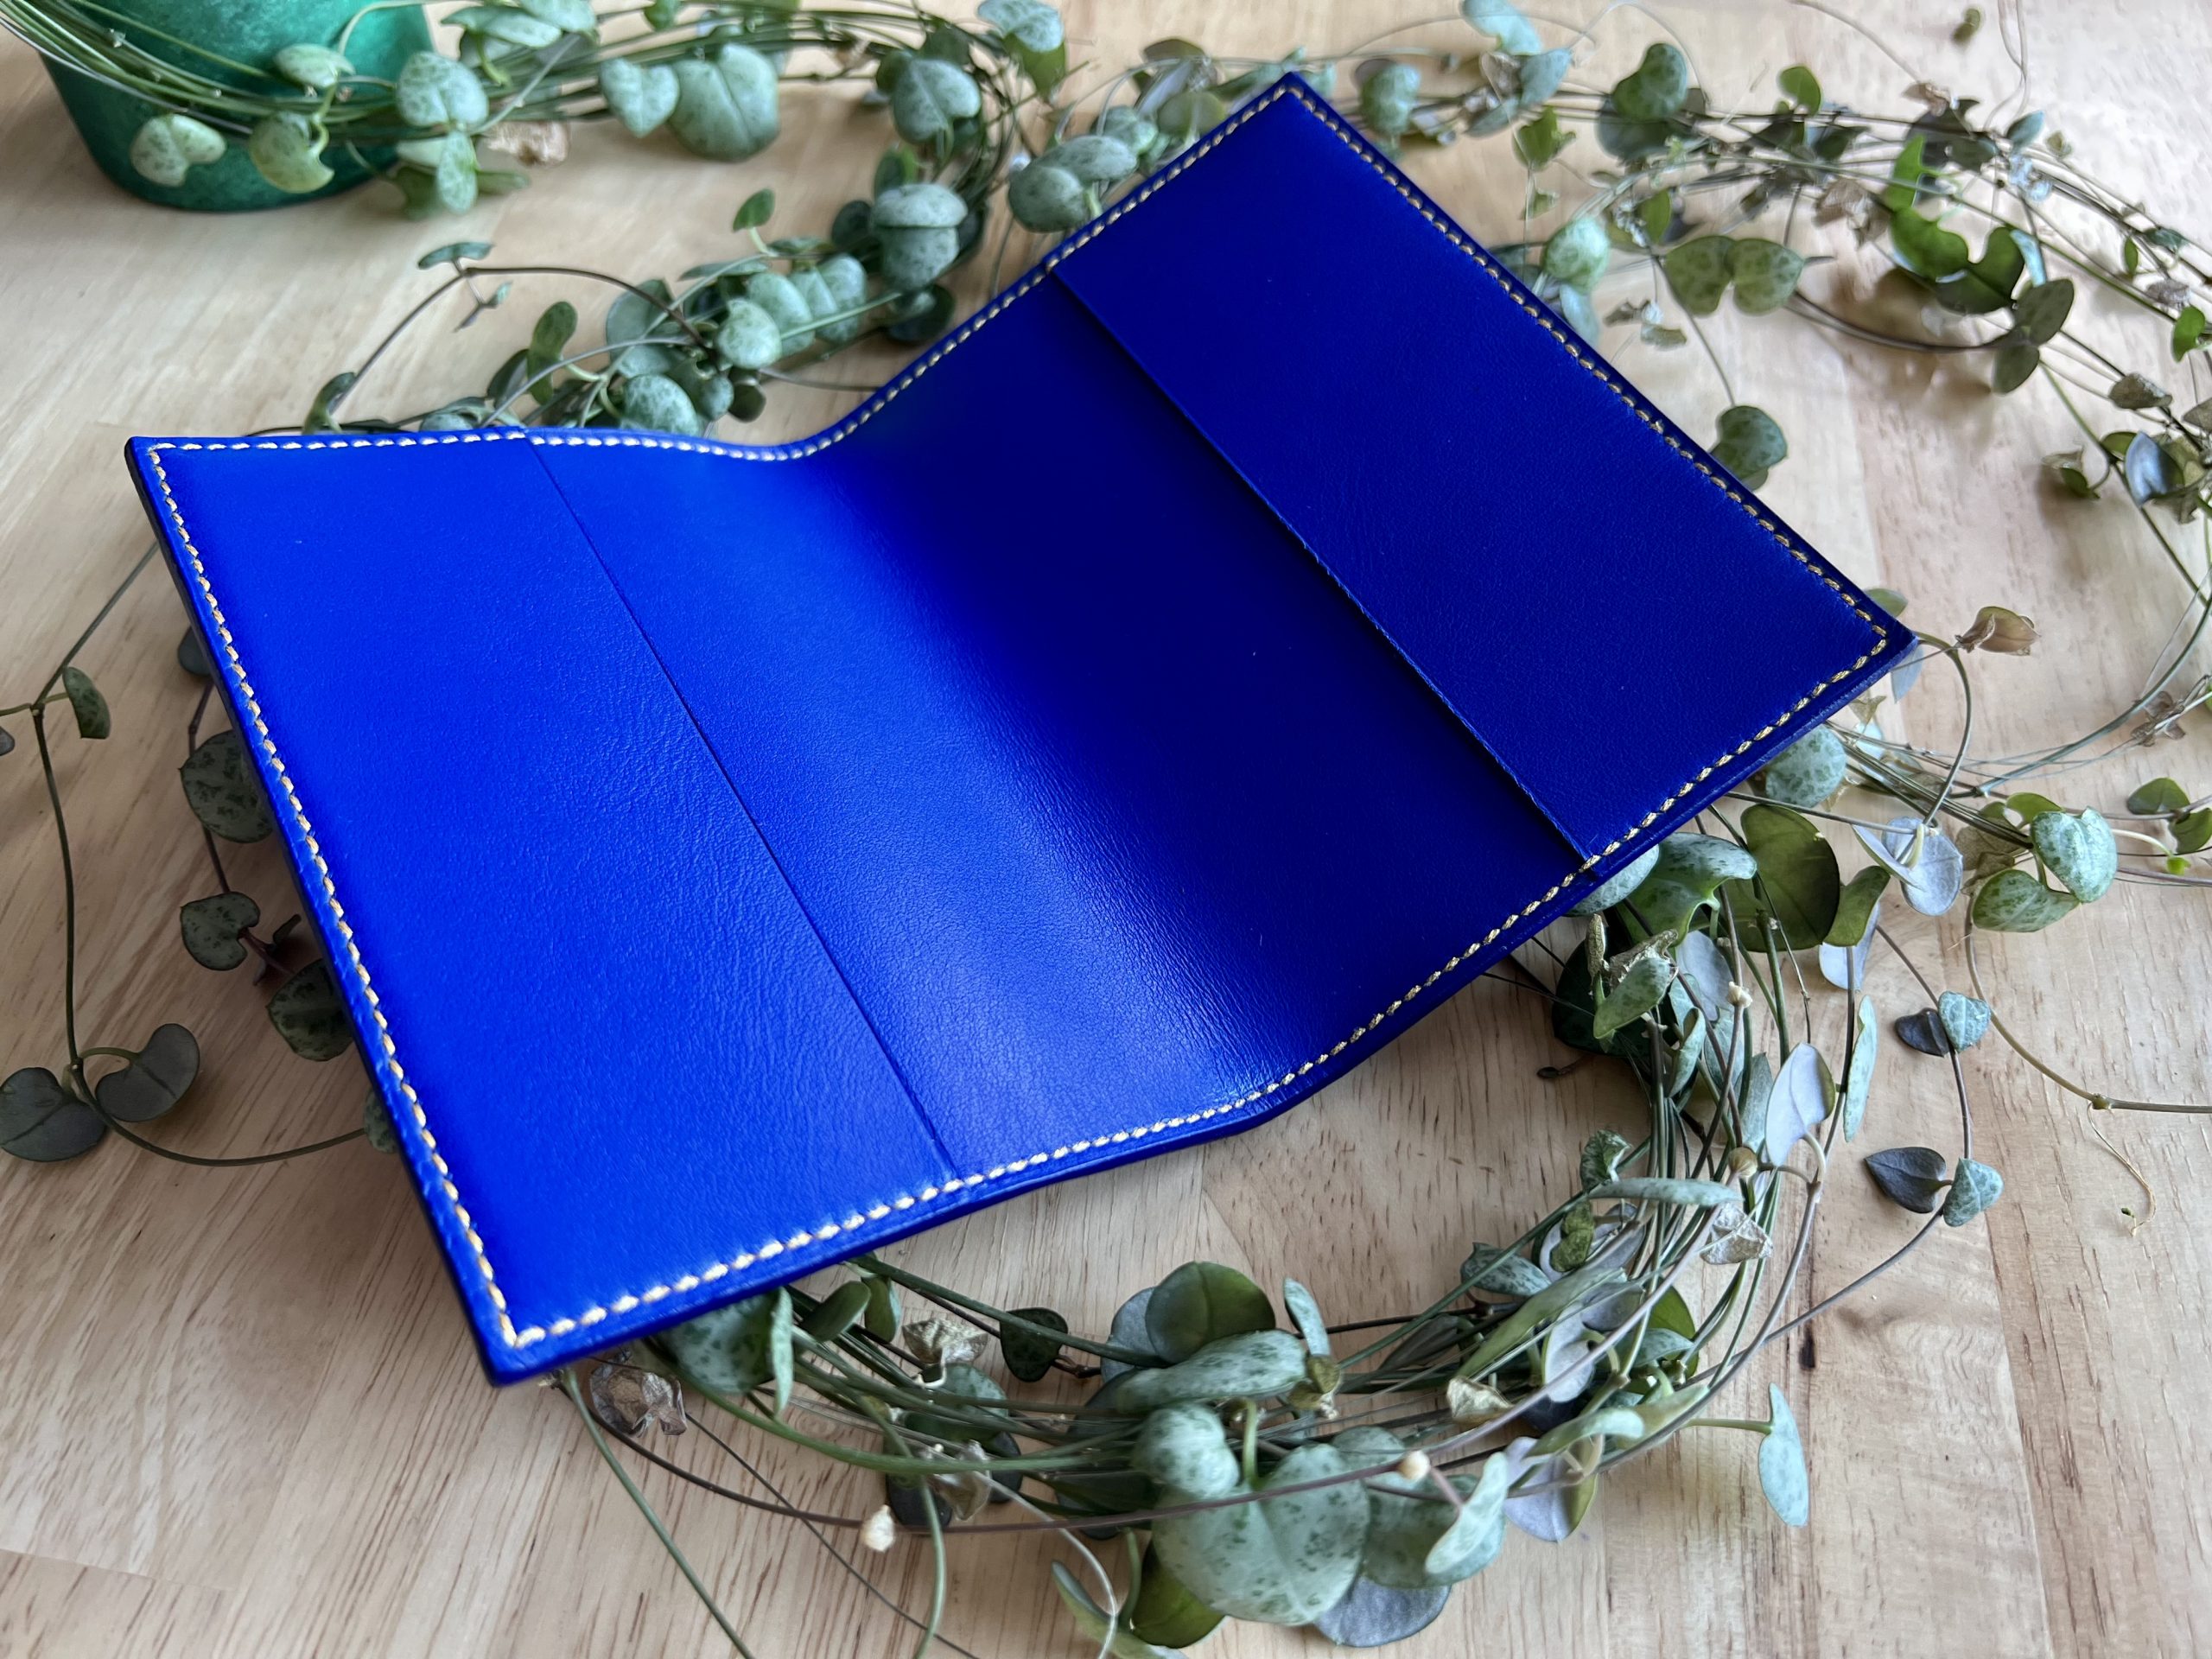 Intérieur protège passeport, entièrement bleu.